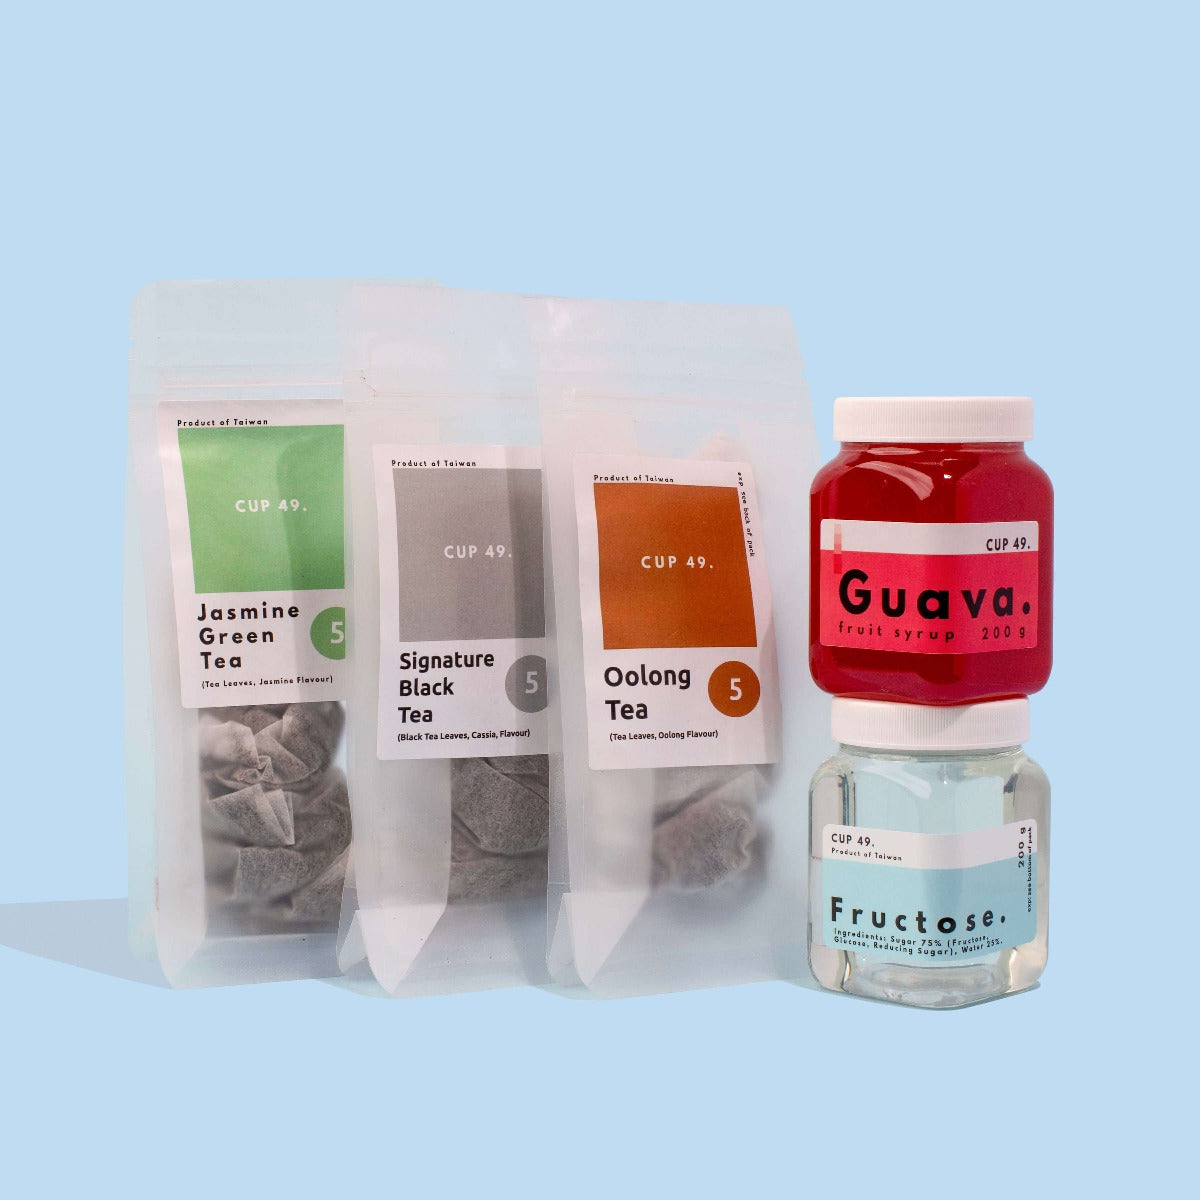 DIY Bubble Tea Kit | 4 Servings, Flavor: Red Guava